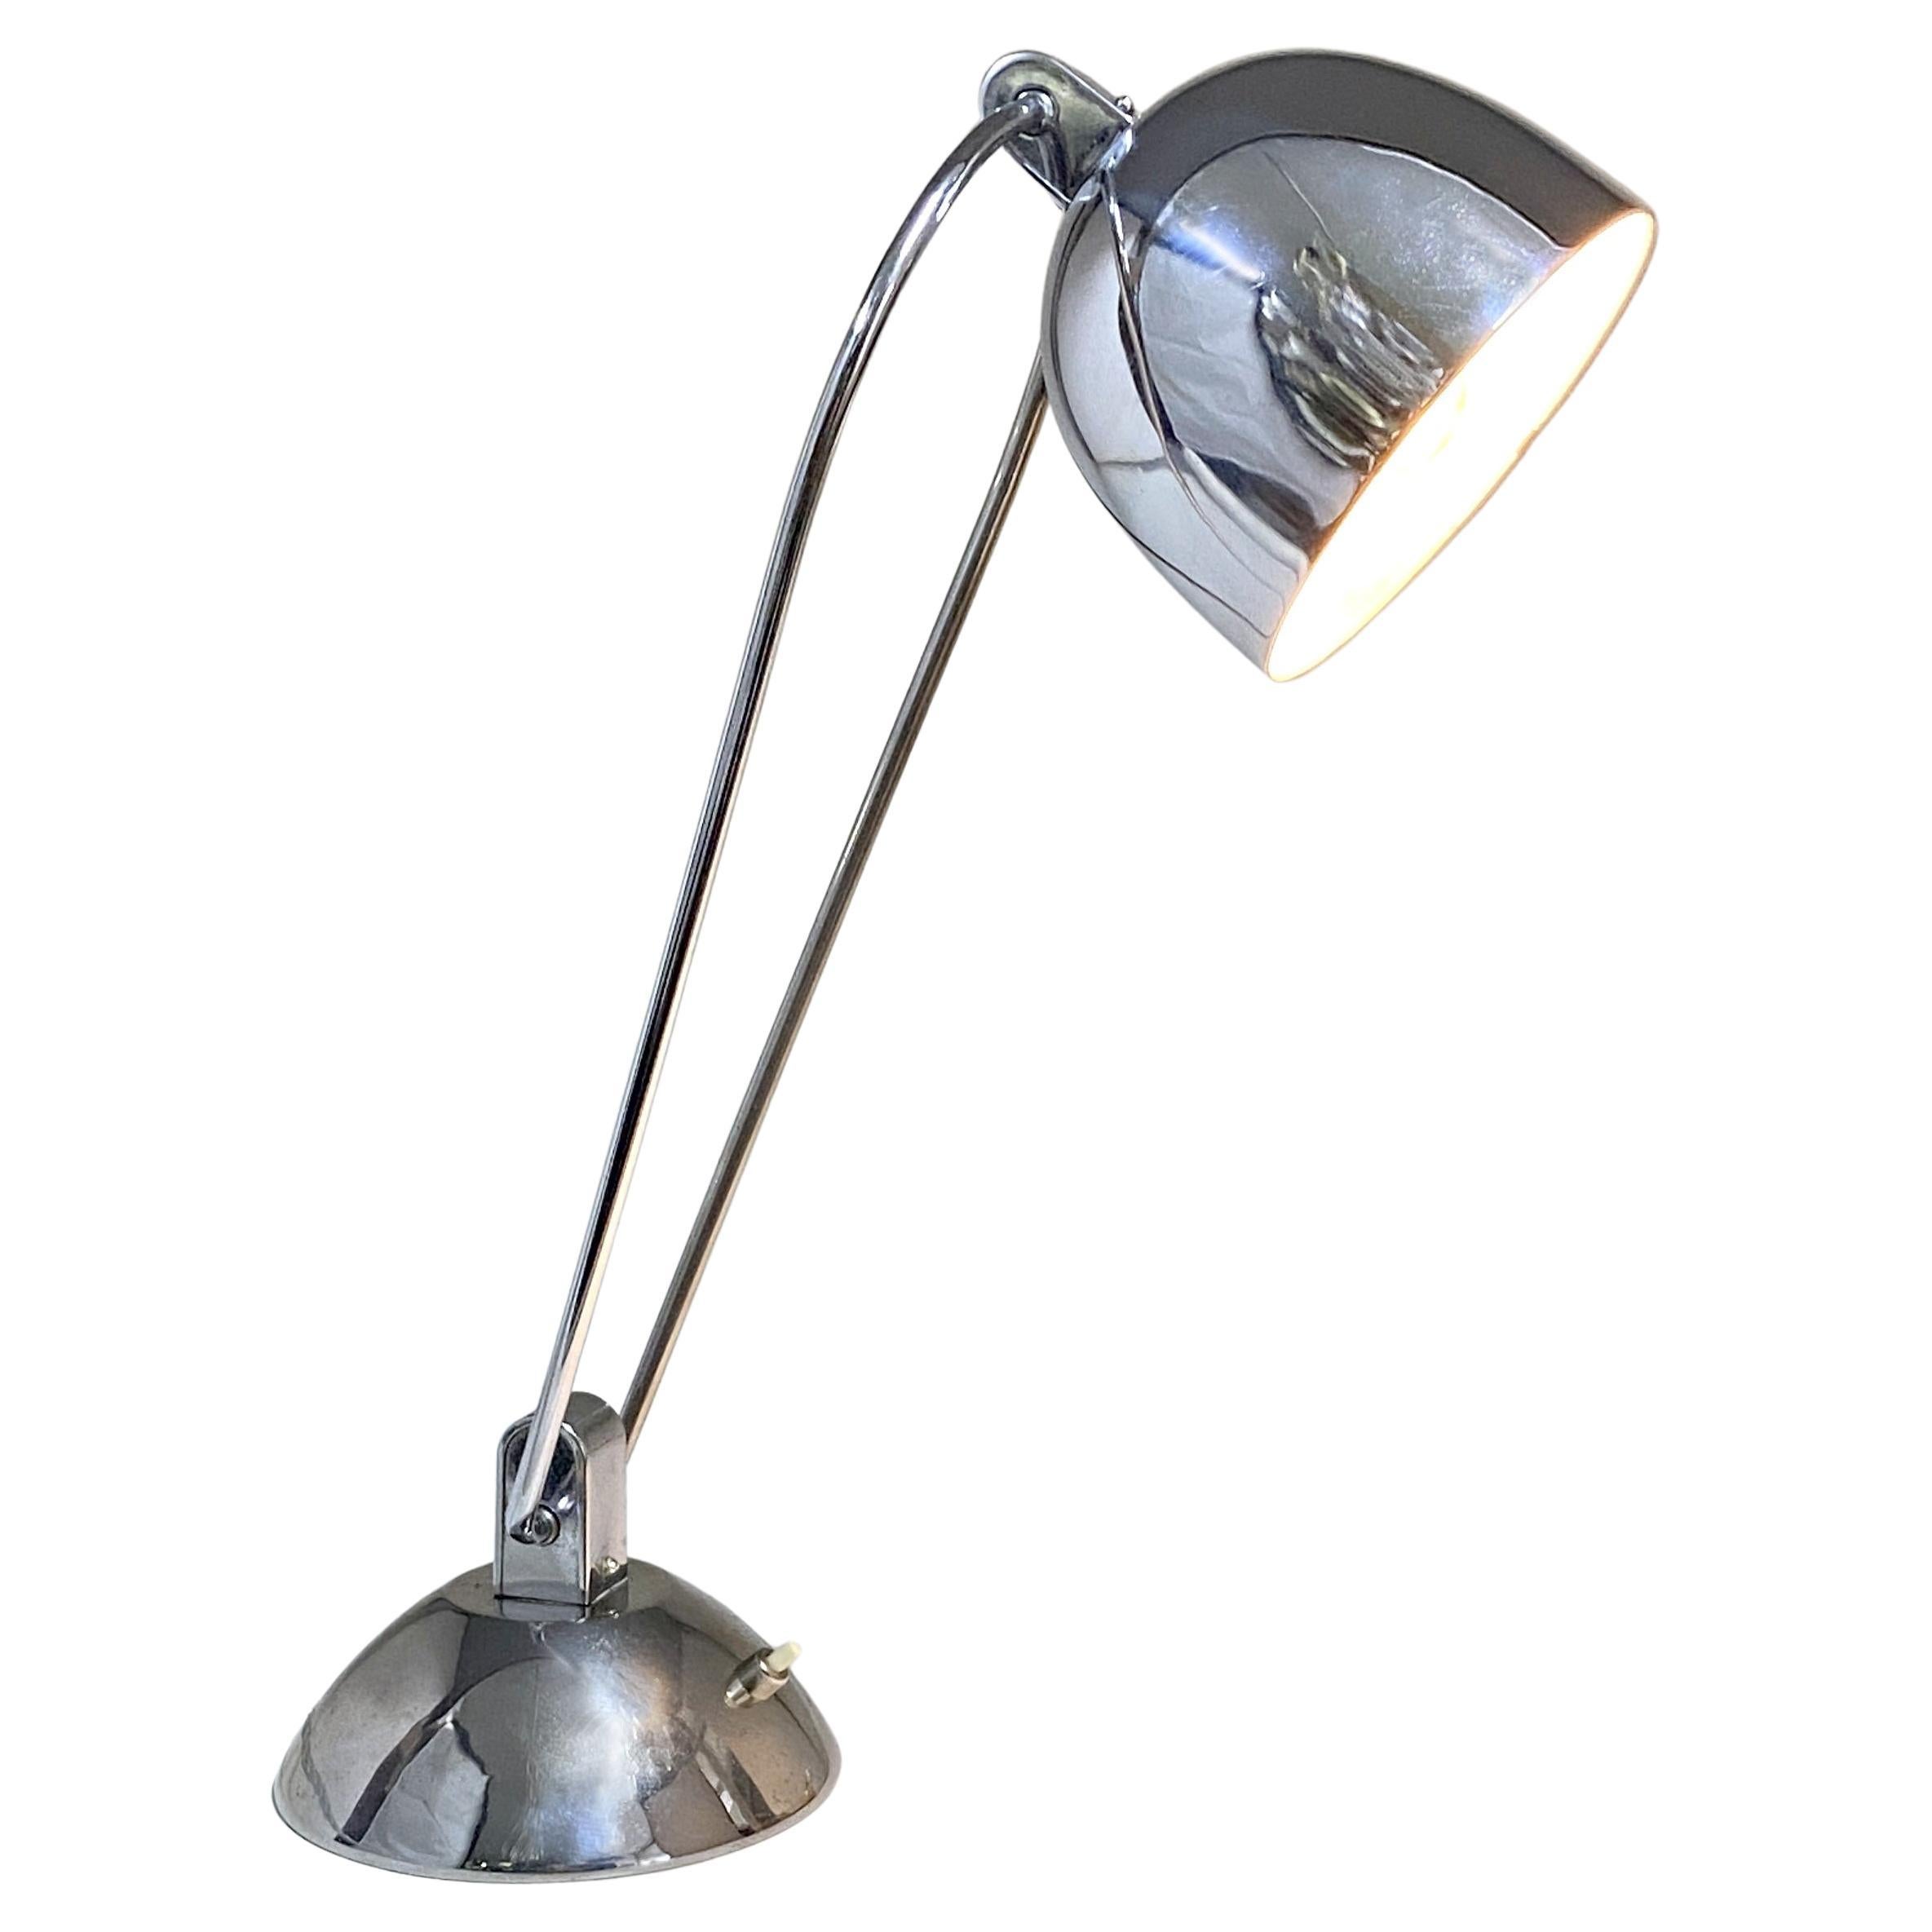  Lampe de bureau moderniste Jumo conçue par Yves Jujeau et André Mounique